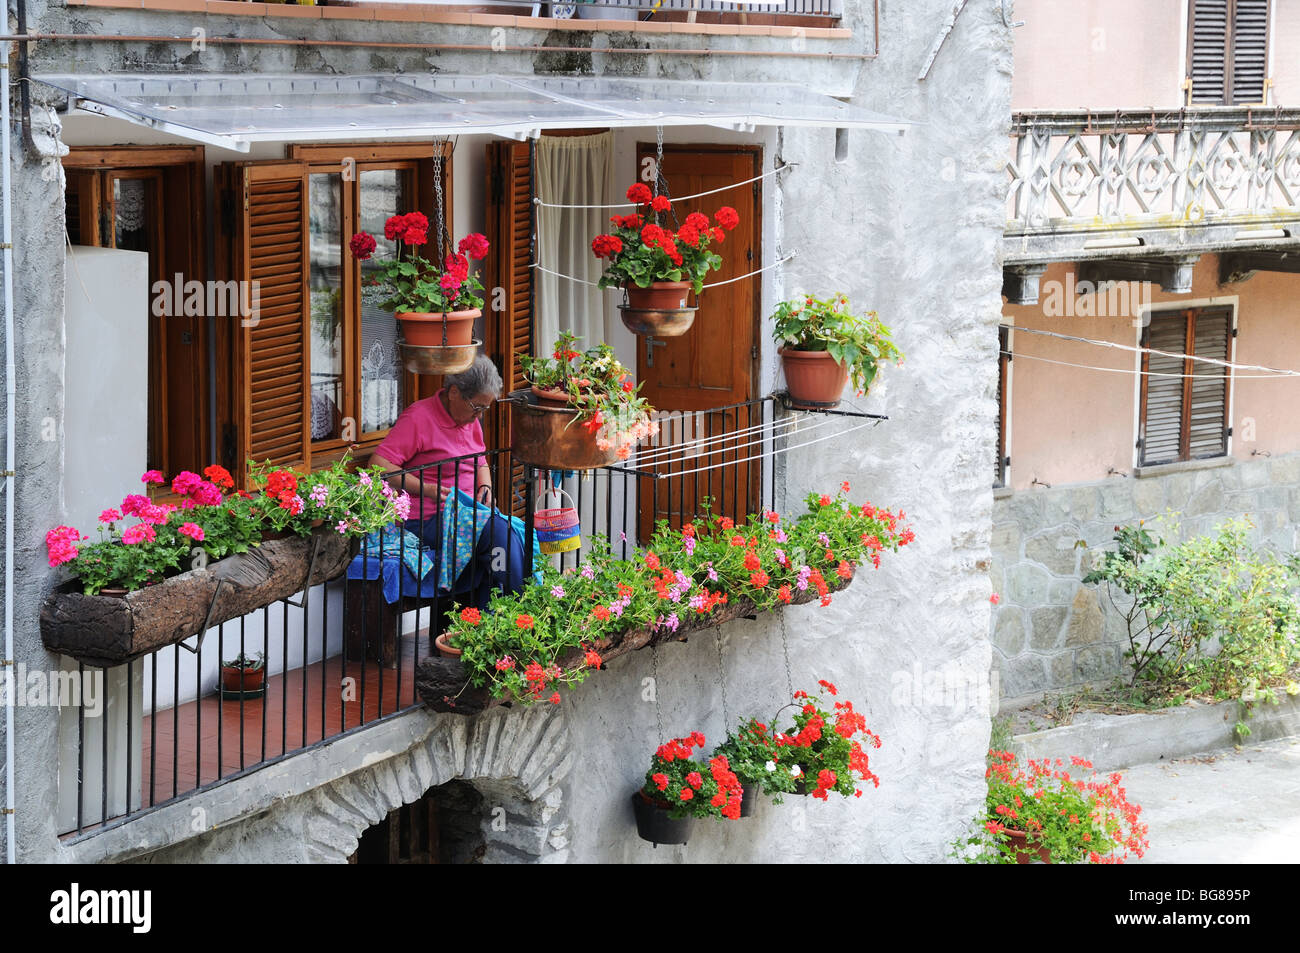 Vieille dame la couture sur balcon entouré par les jardinières pots Fleurs rouge rose géranium Pont St Martin Vallée d'Aoste Italie Banque D'Images